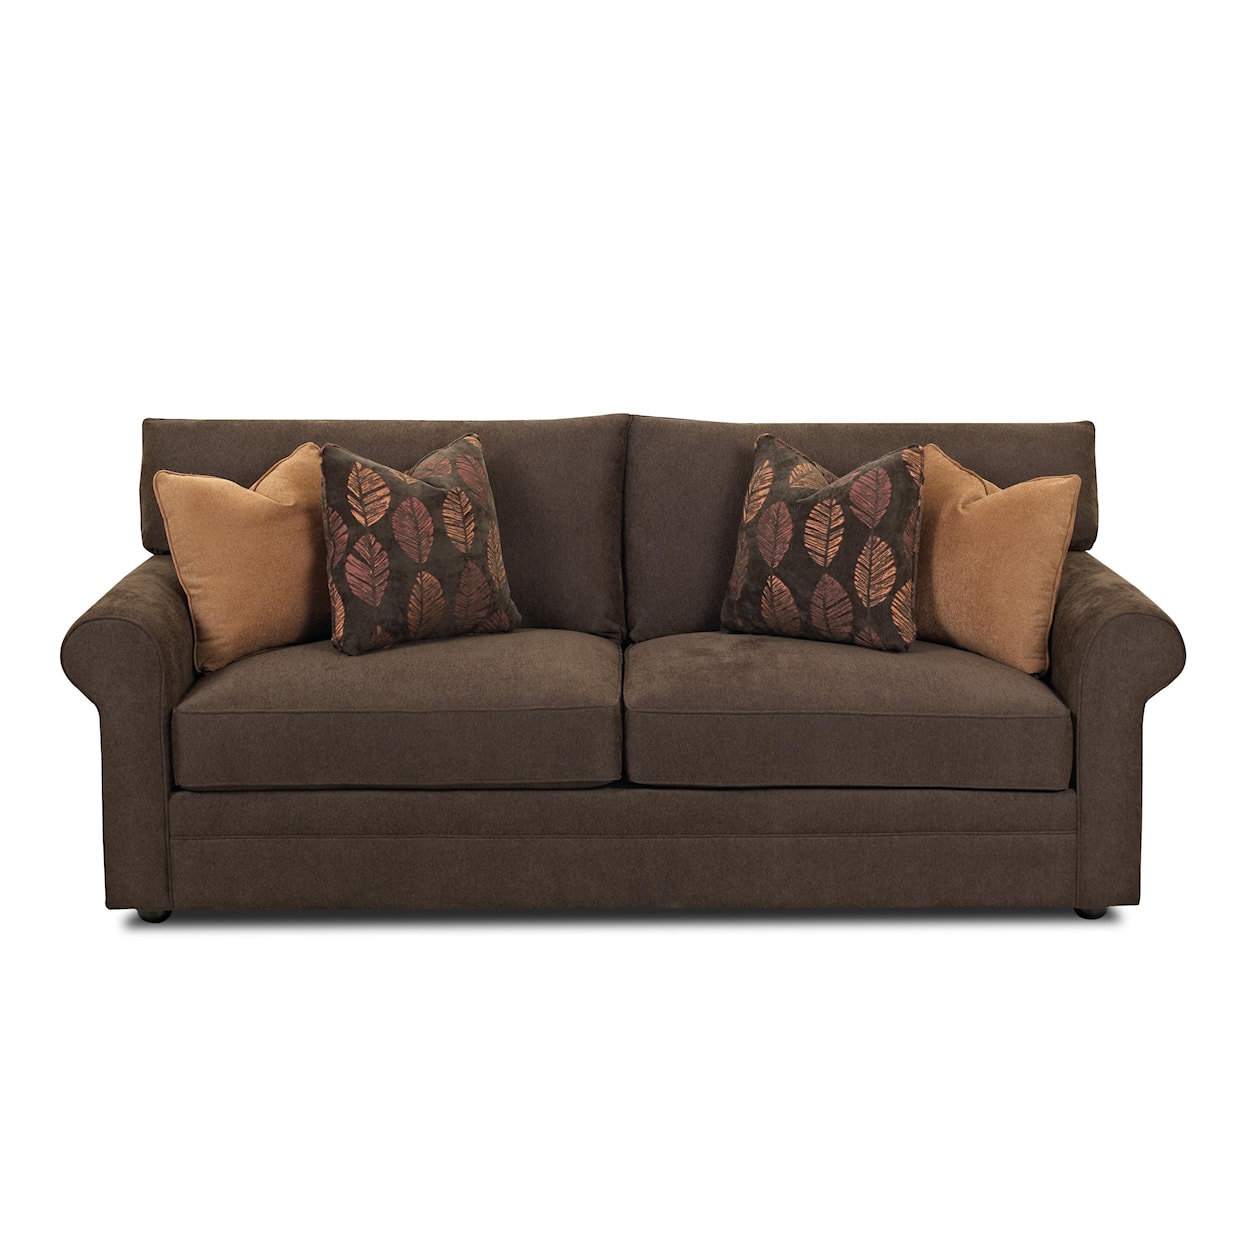 Klaussner Comfy Sofa